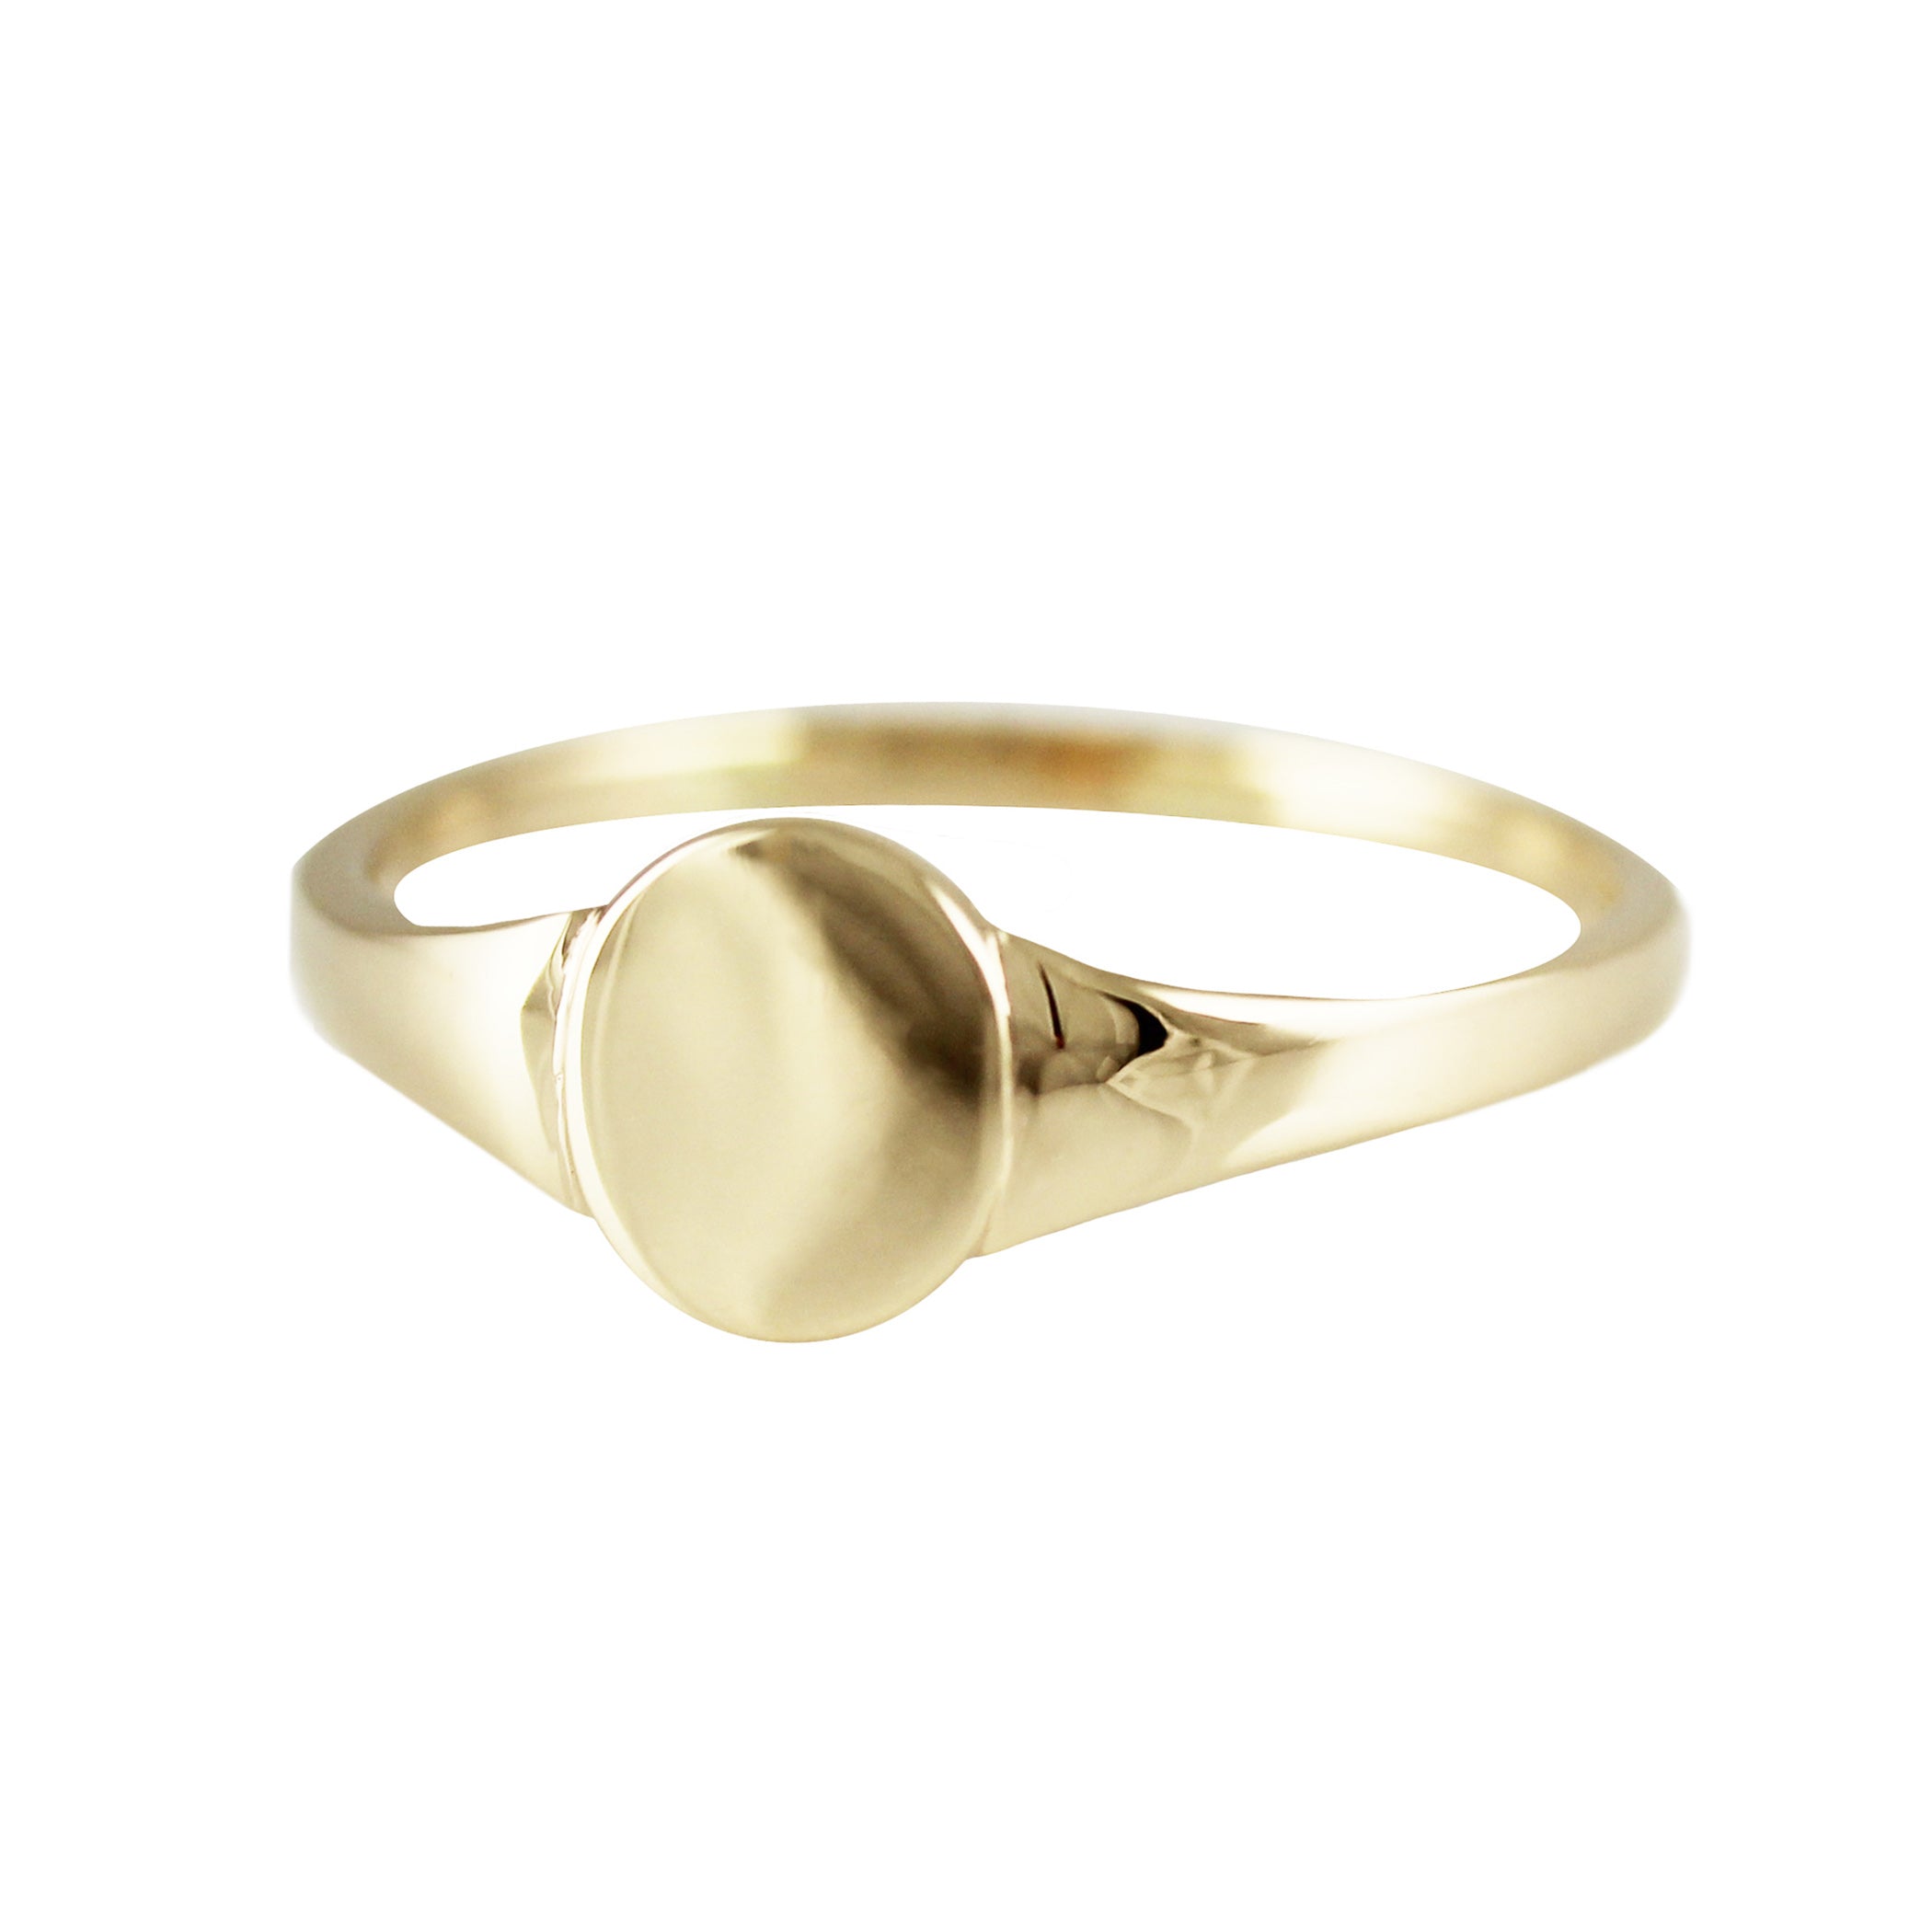 Engravable Gold Signet Ring 14K White Gold / 4.5